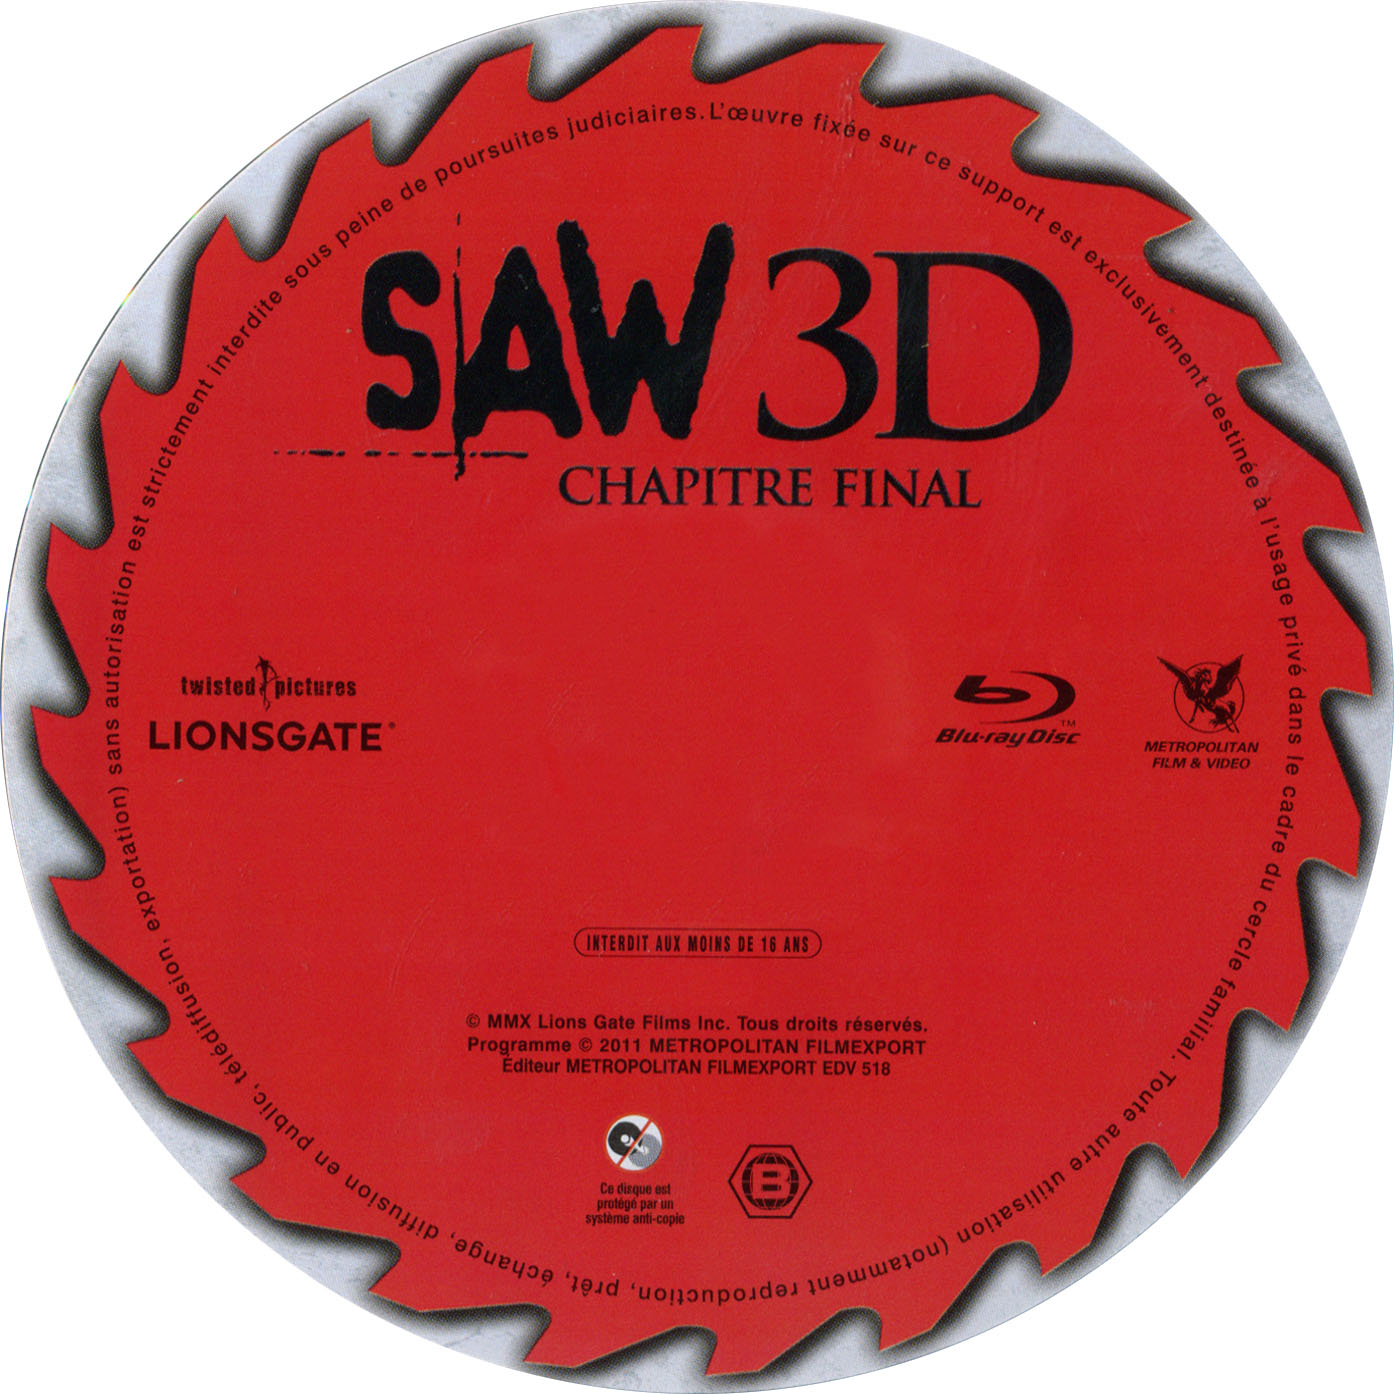 Saw 3D chapitre final (BLU-RAY)